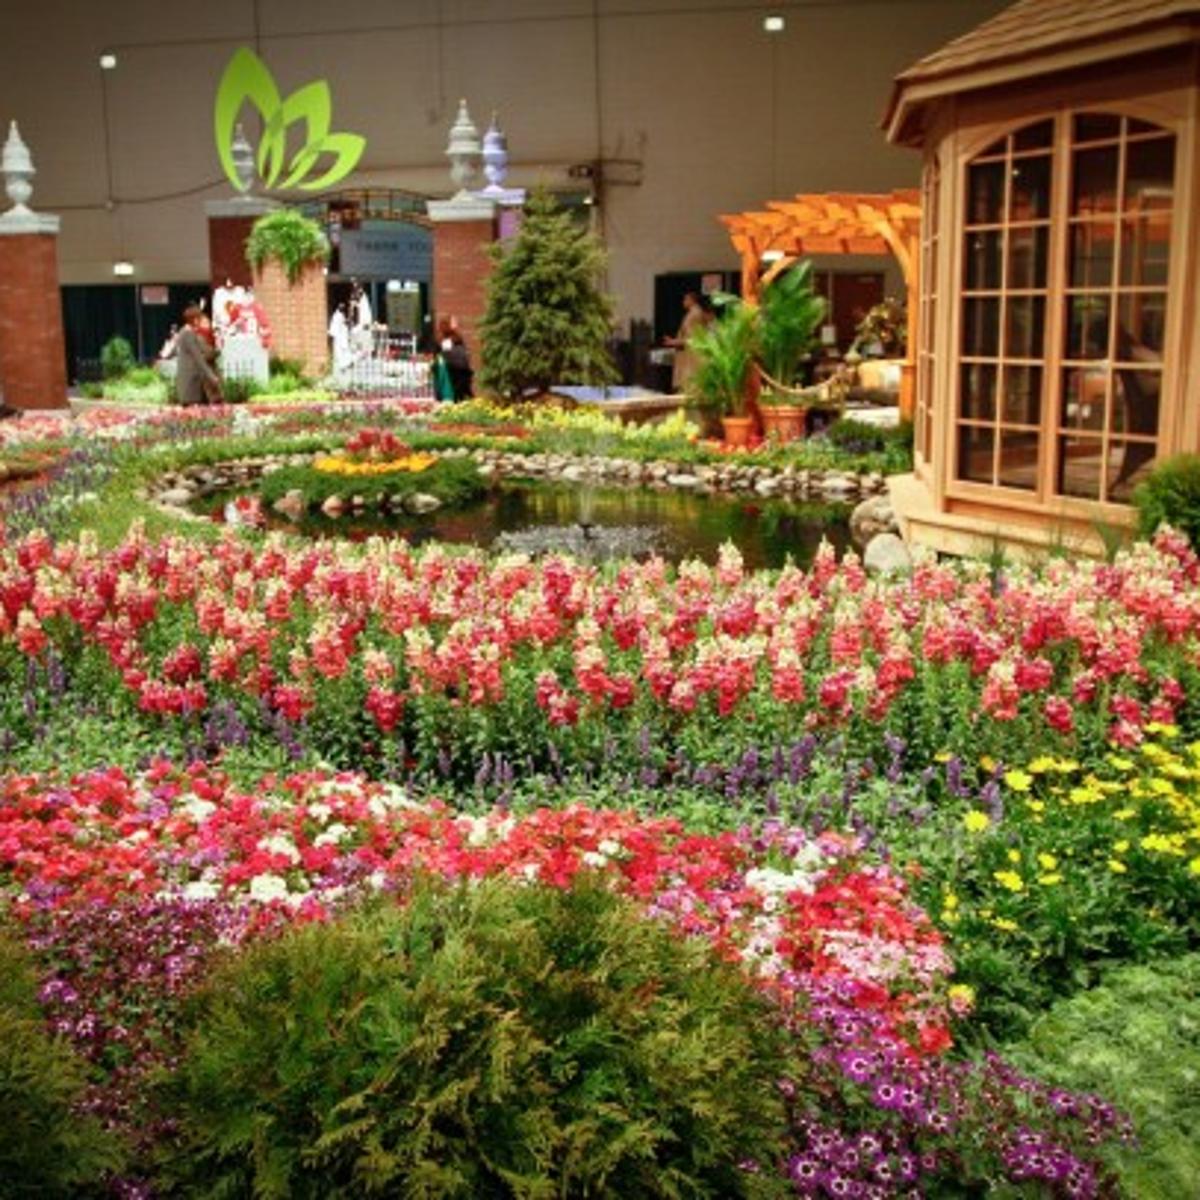 chicago flower & garden show takes fashionista turn | home & garden